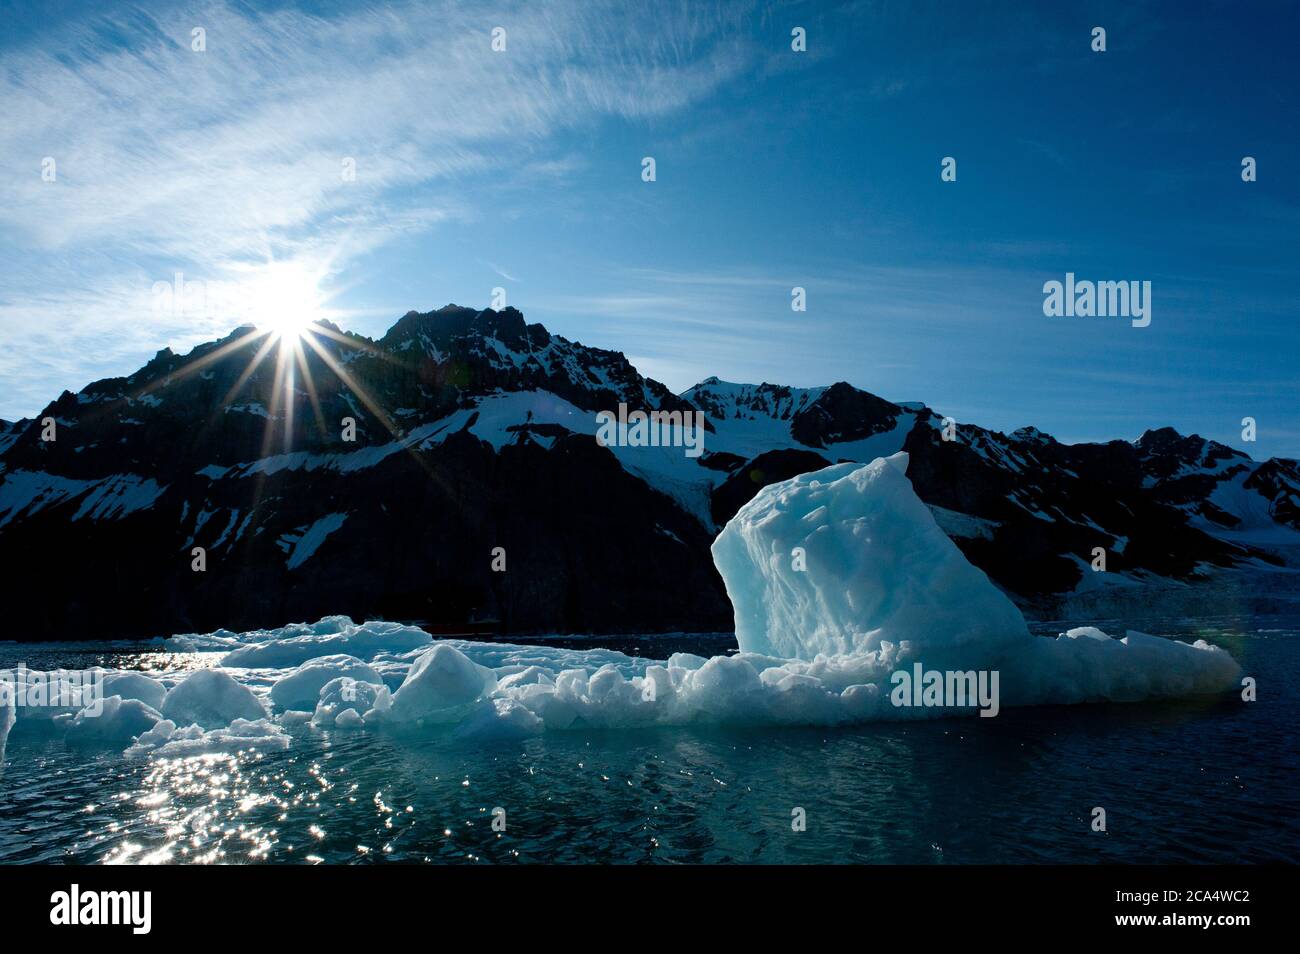 L'iceberg rétroéclairé avec le soleil éclate sur la montagne enneigée, tandis que l'arrière-plan montre un manque de floes de glace dans le fjord en raison de la crise climatique du réchauffement climatique. Banque D'Images